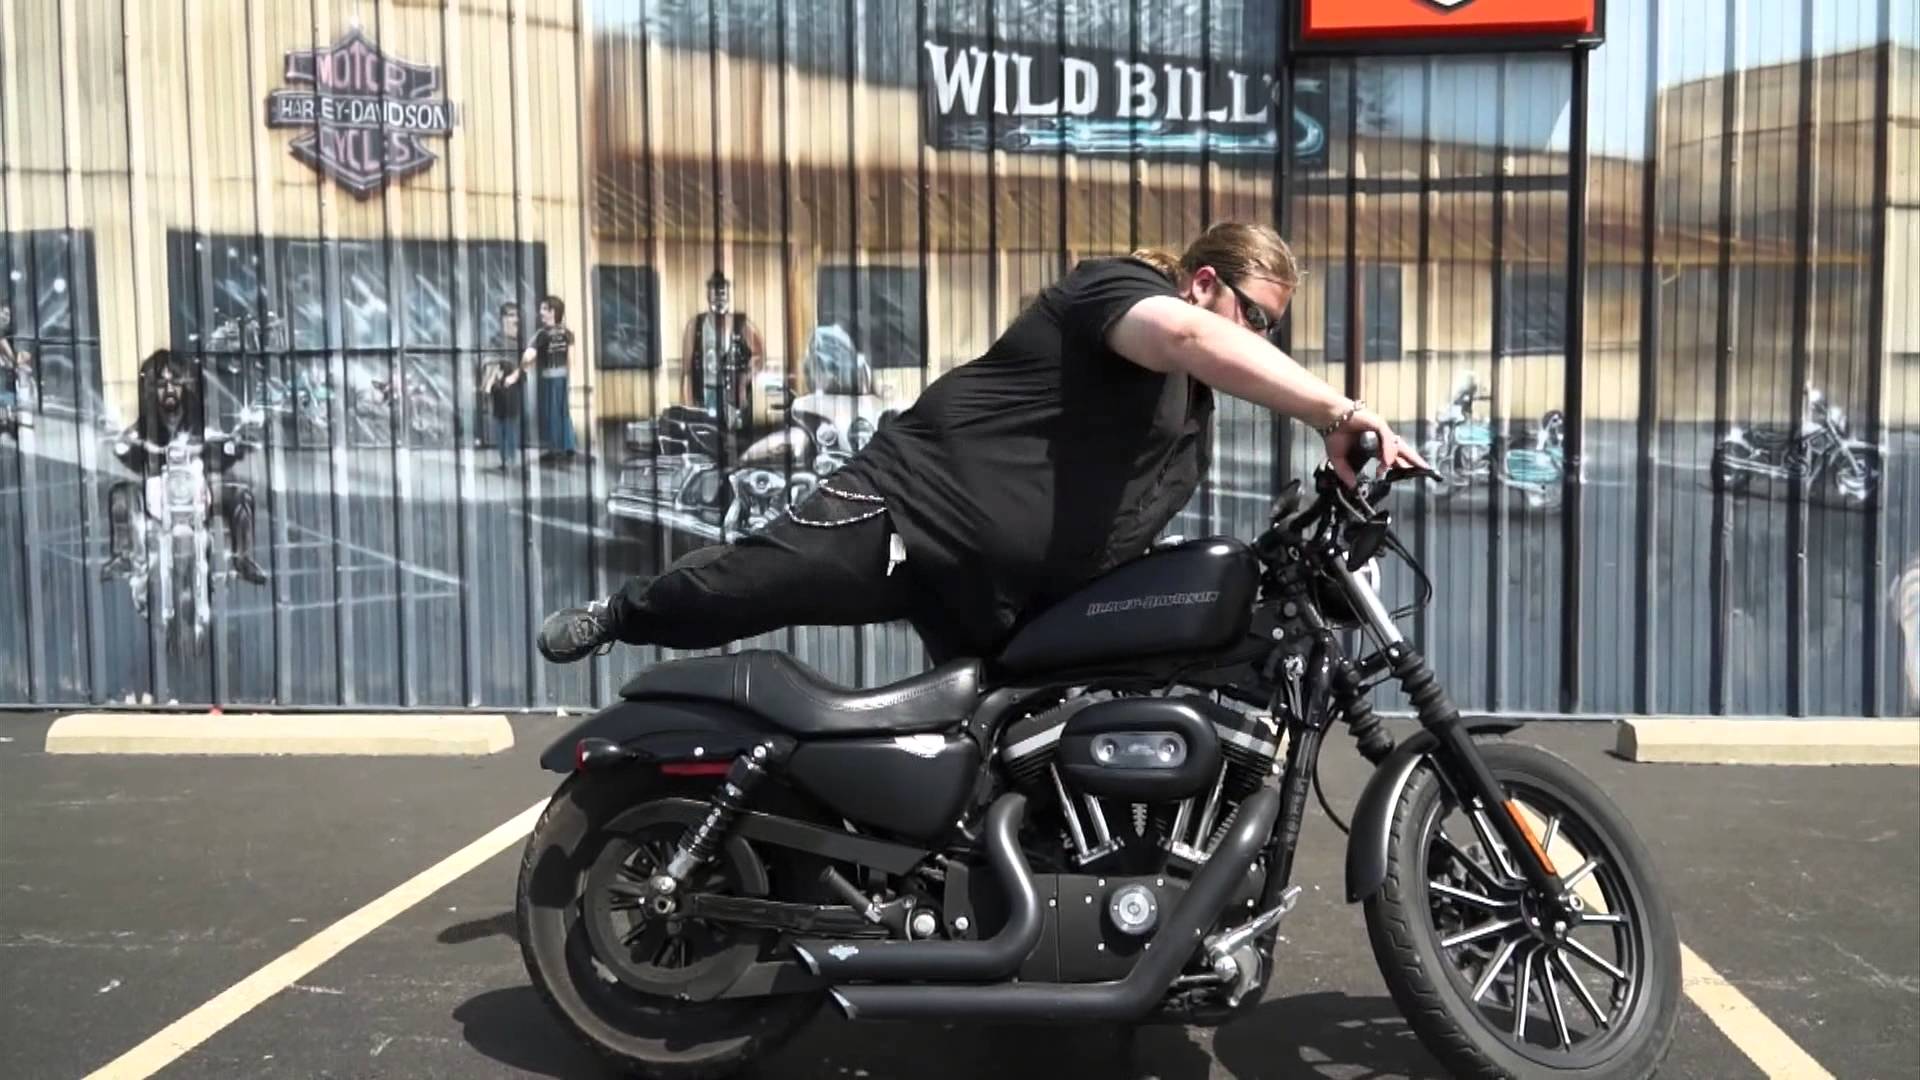 2010 Harley Davidson Iron 883 - YouTube